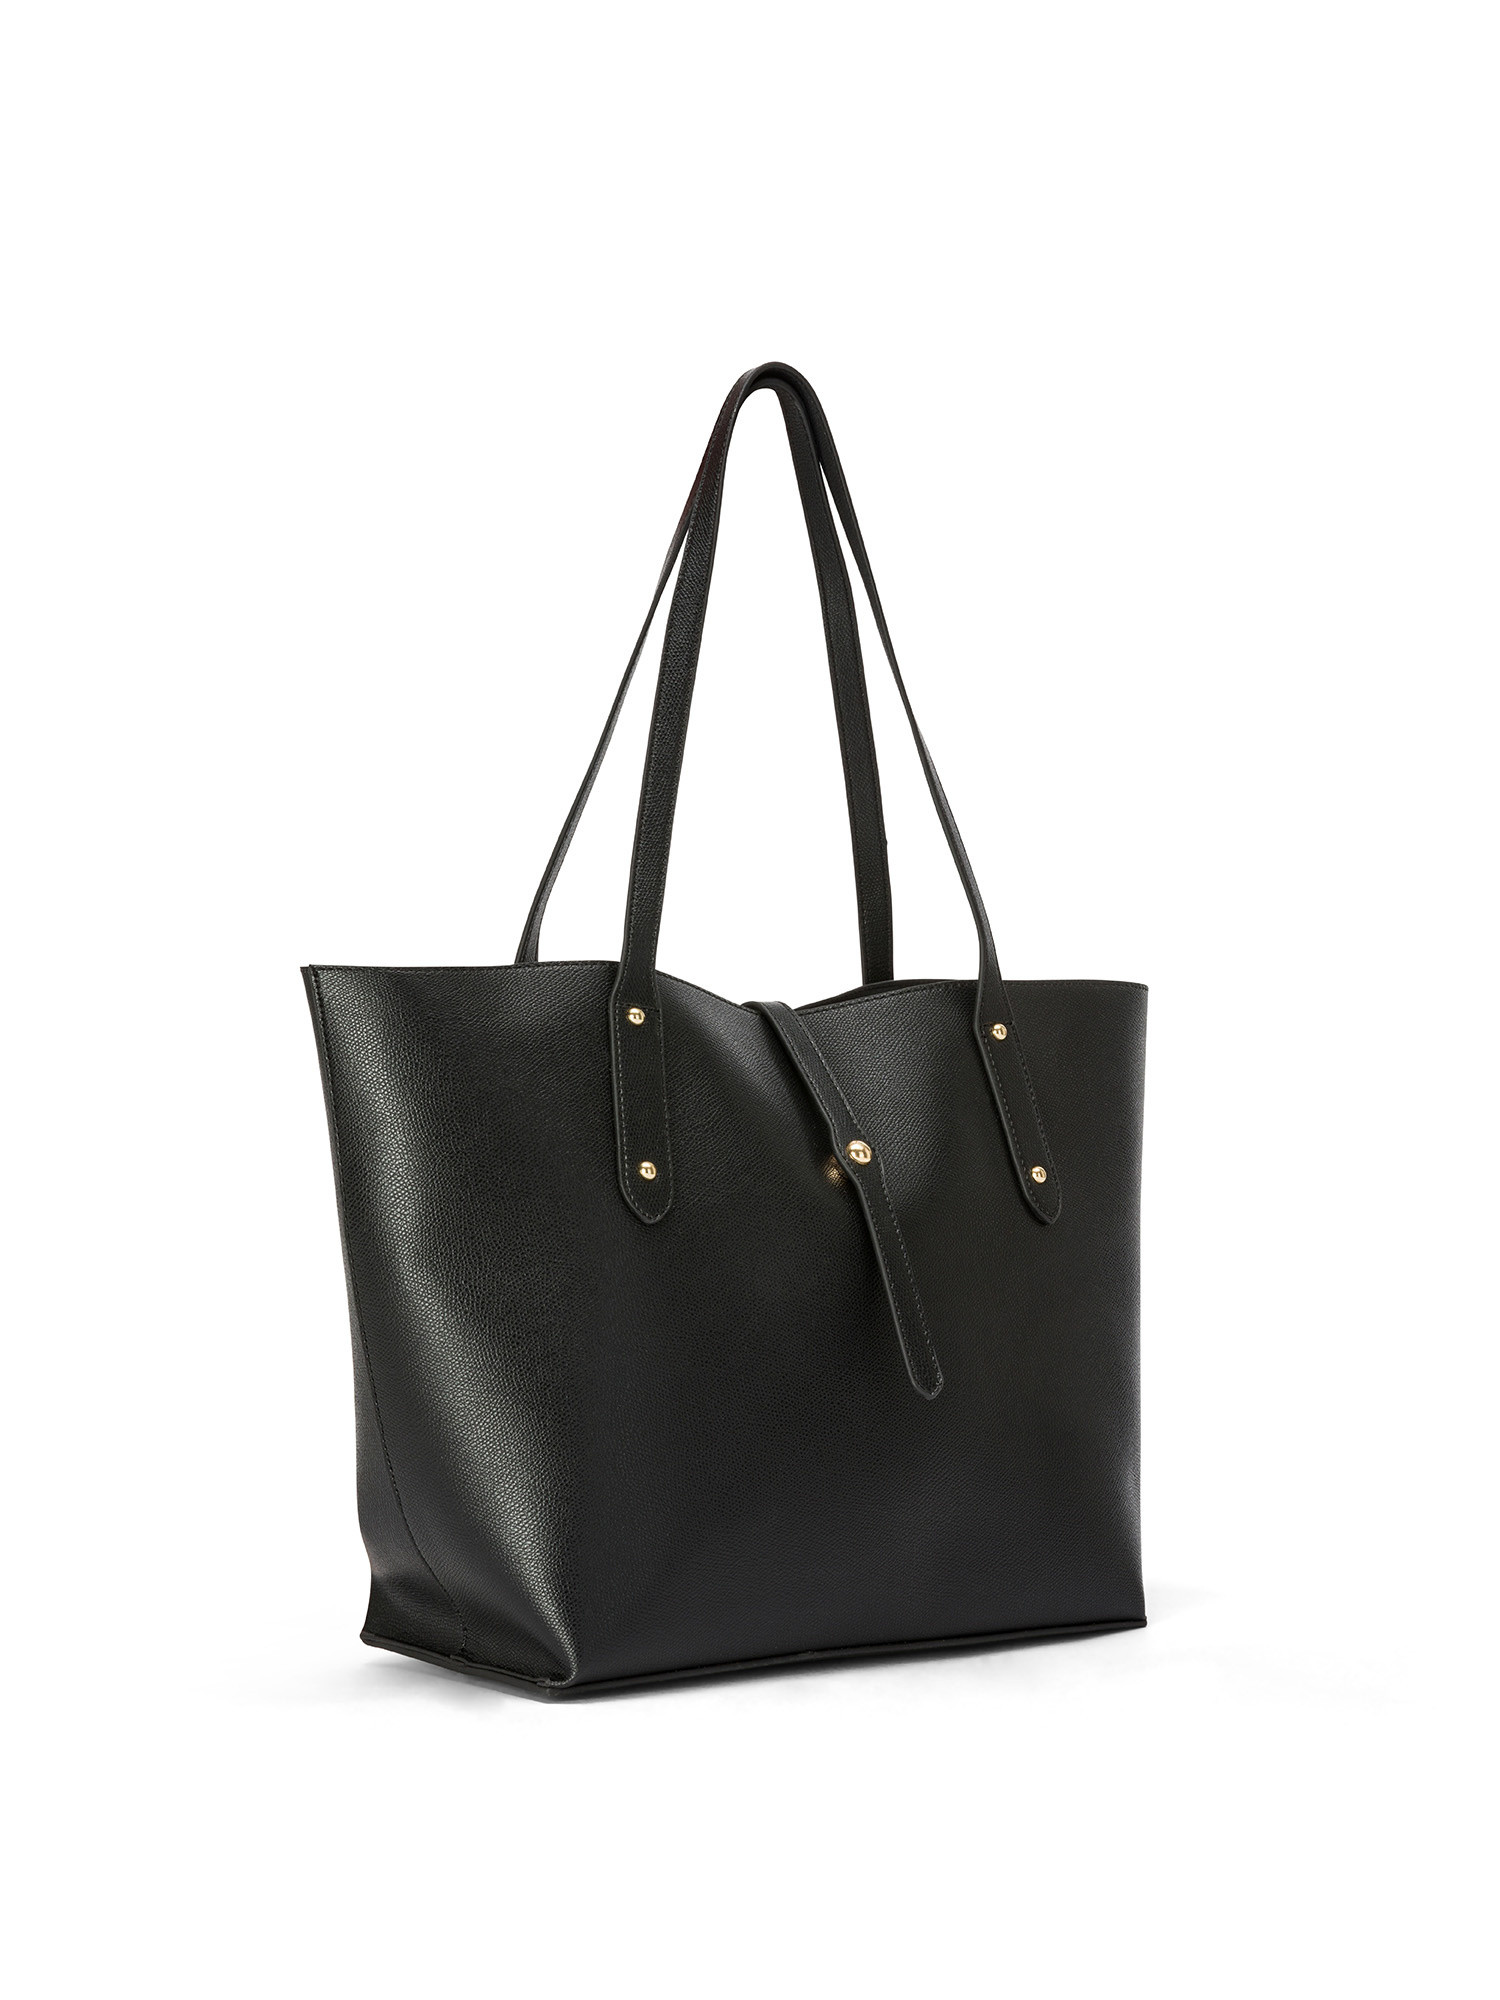 Koan - Shopping bag, Nero, large image number 1